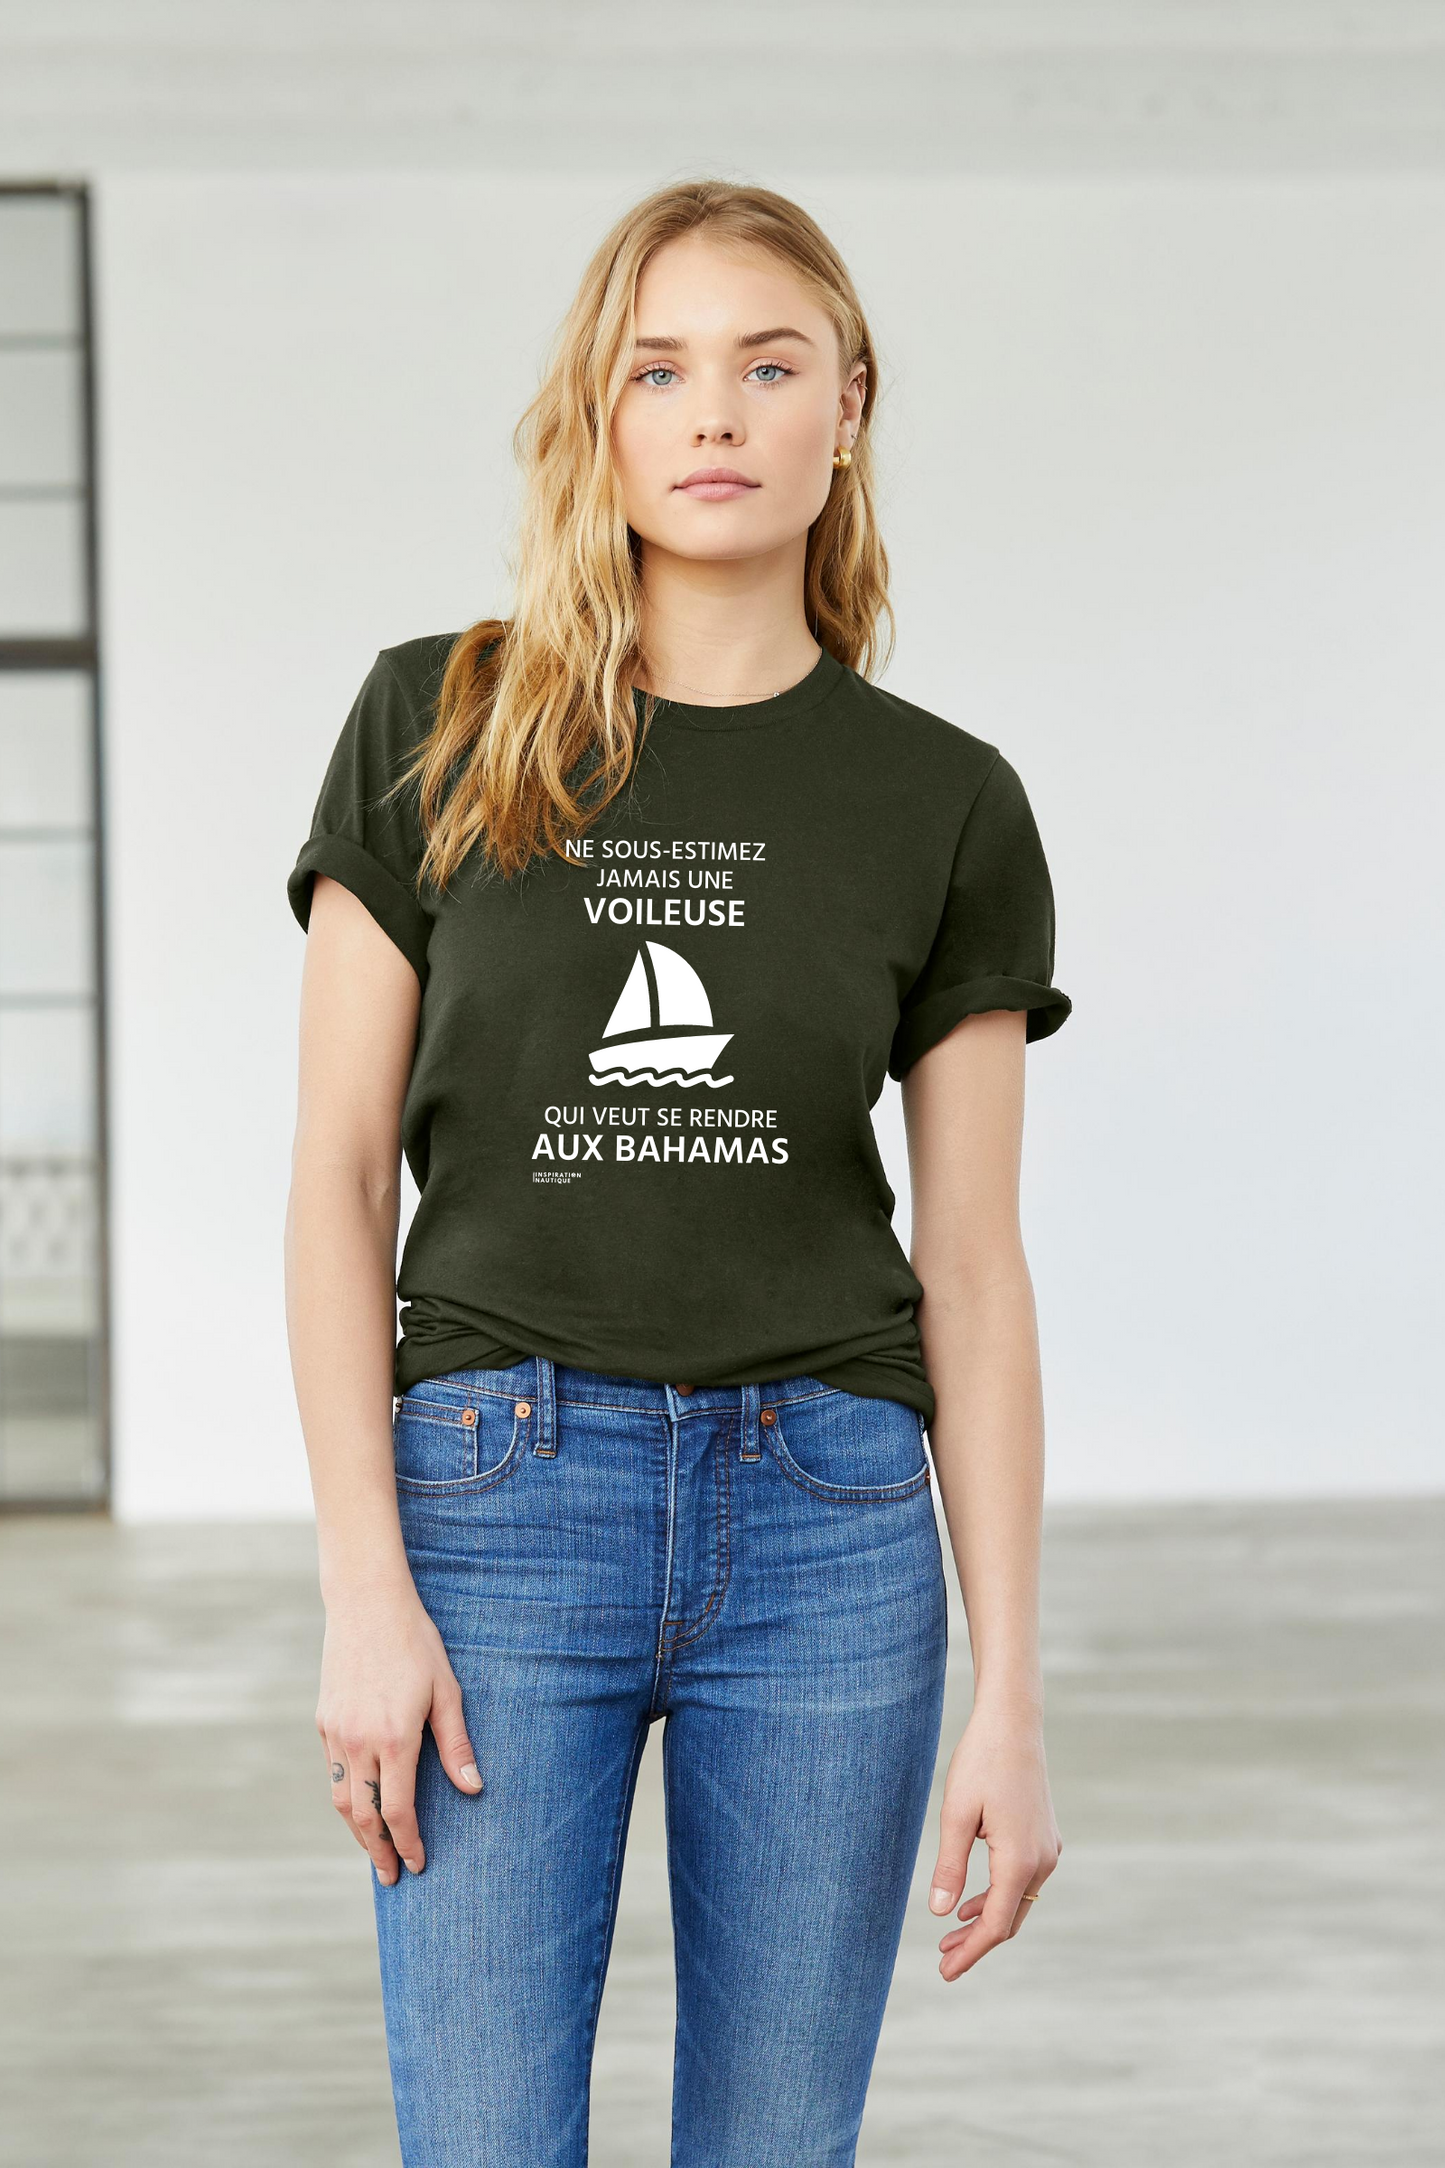 T-shirt unisexe : Ne sous-estimez jamais une voileuse qui veut se rendre aux Bahamas - Visuel blanc